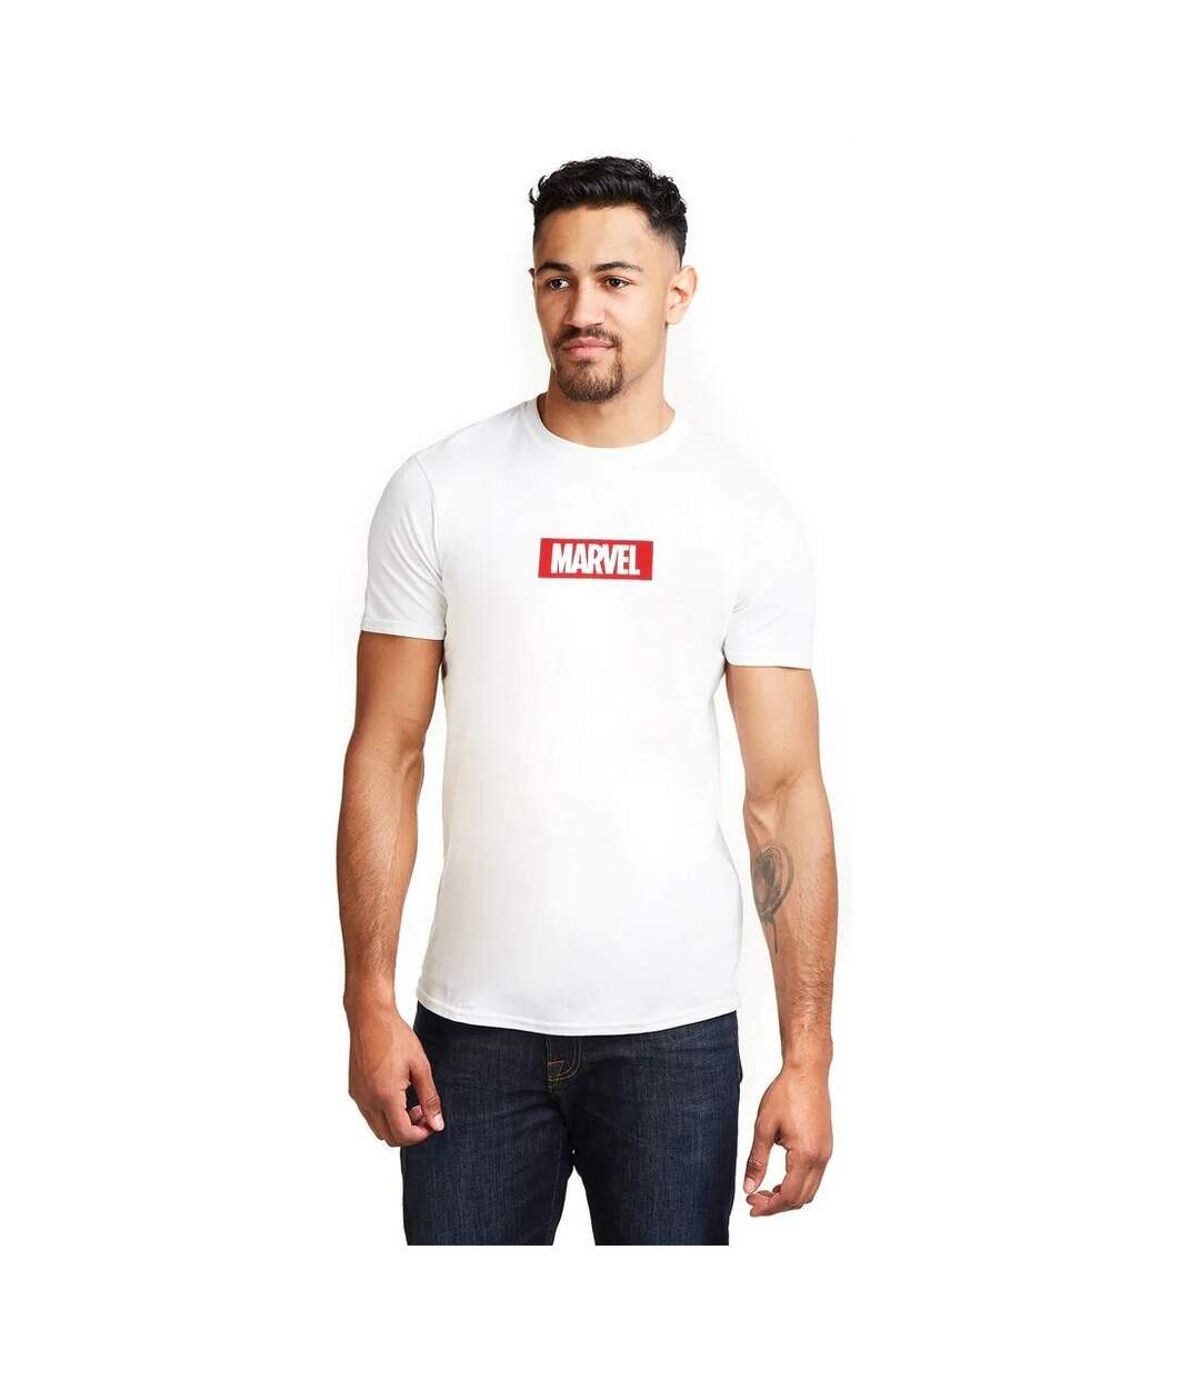 Marvel - T-shirt - Homme (Blanc) - UTTV476